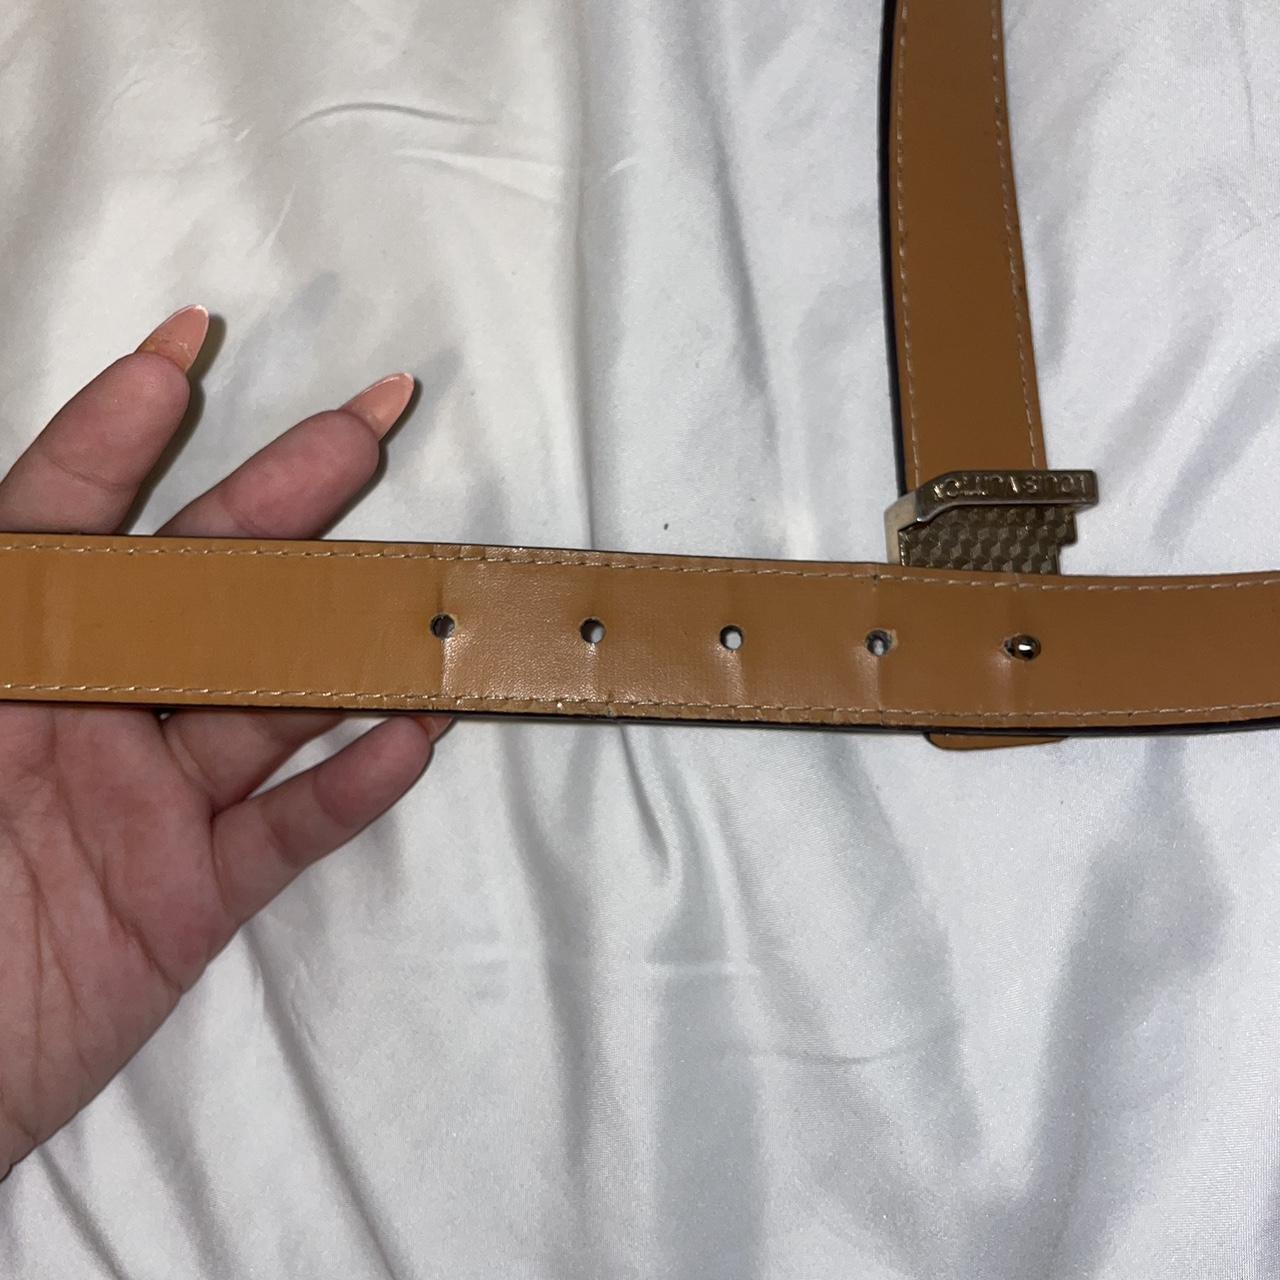 Louis Vuitton Paris unisex belt. Fits up to a 48 - Depop